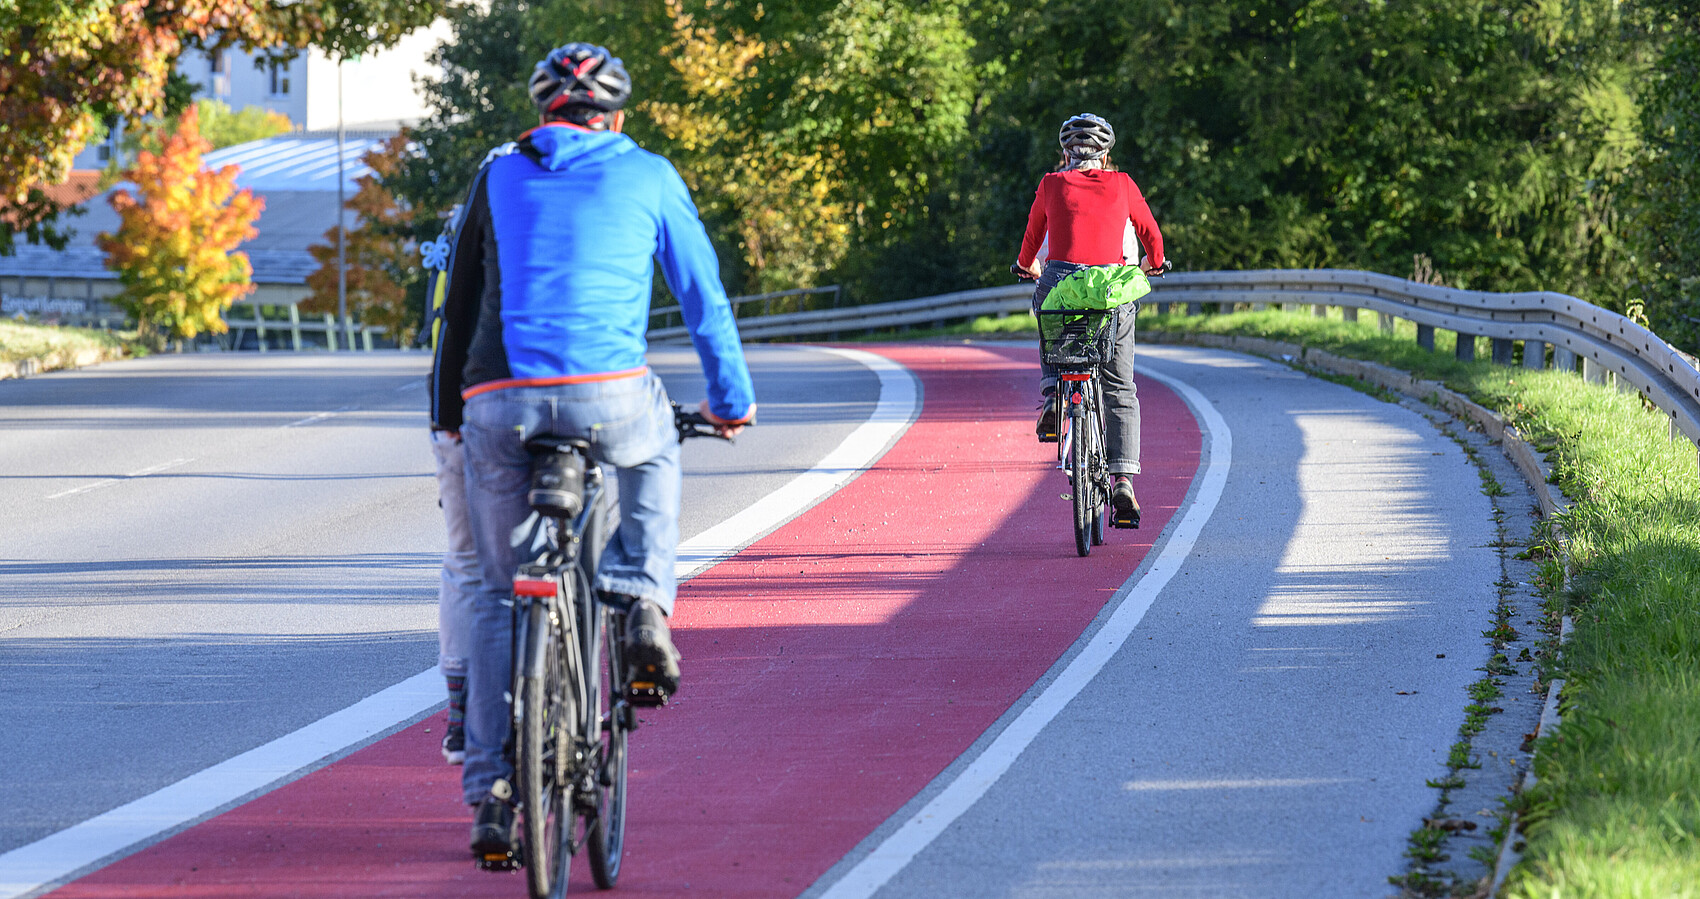 Zwei Fahrradfahrer fahren auf einem rot gekennzeichneten Radweg. man sieht sie von hinten